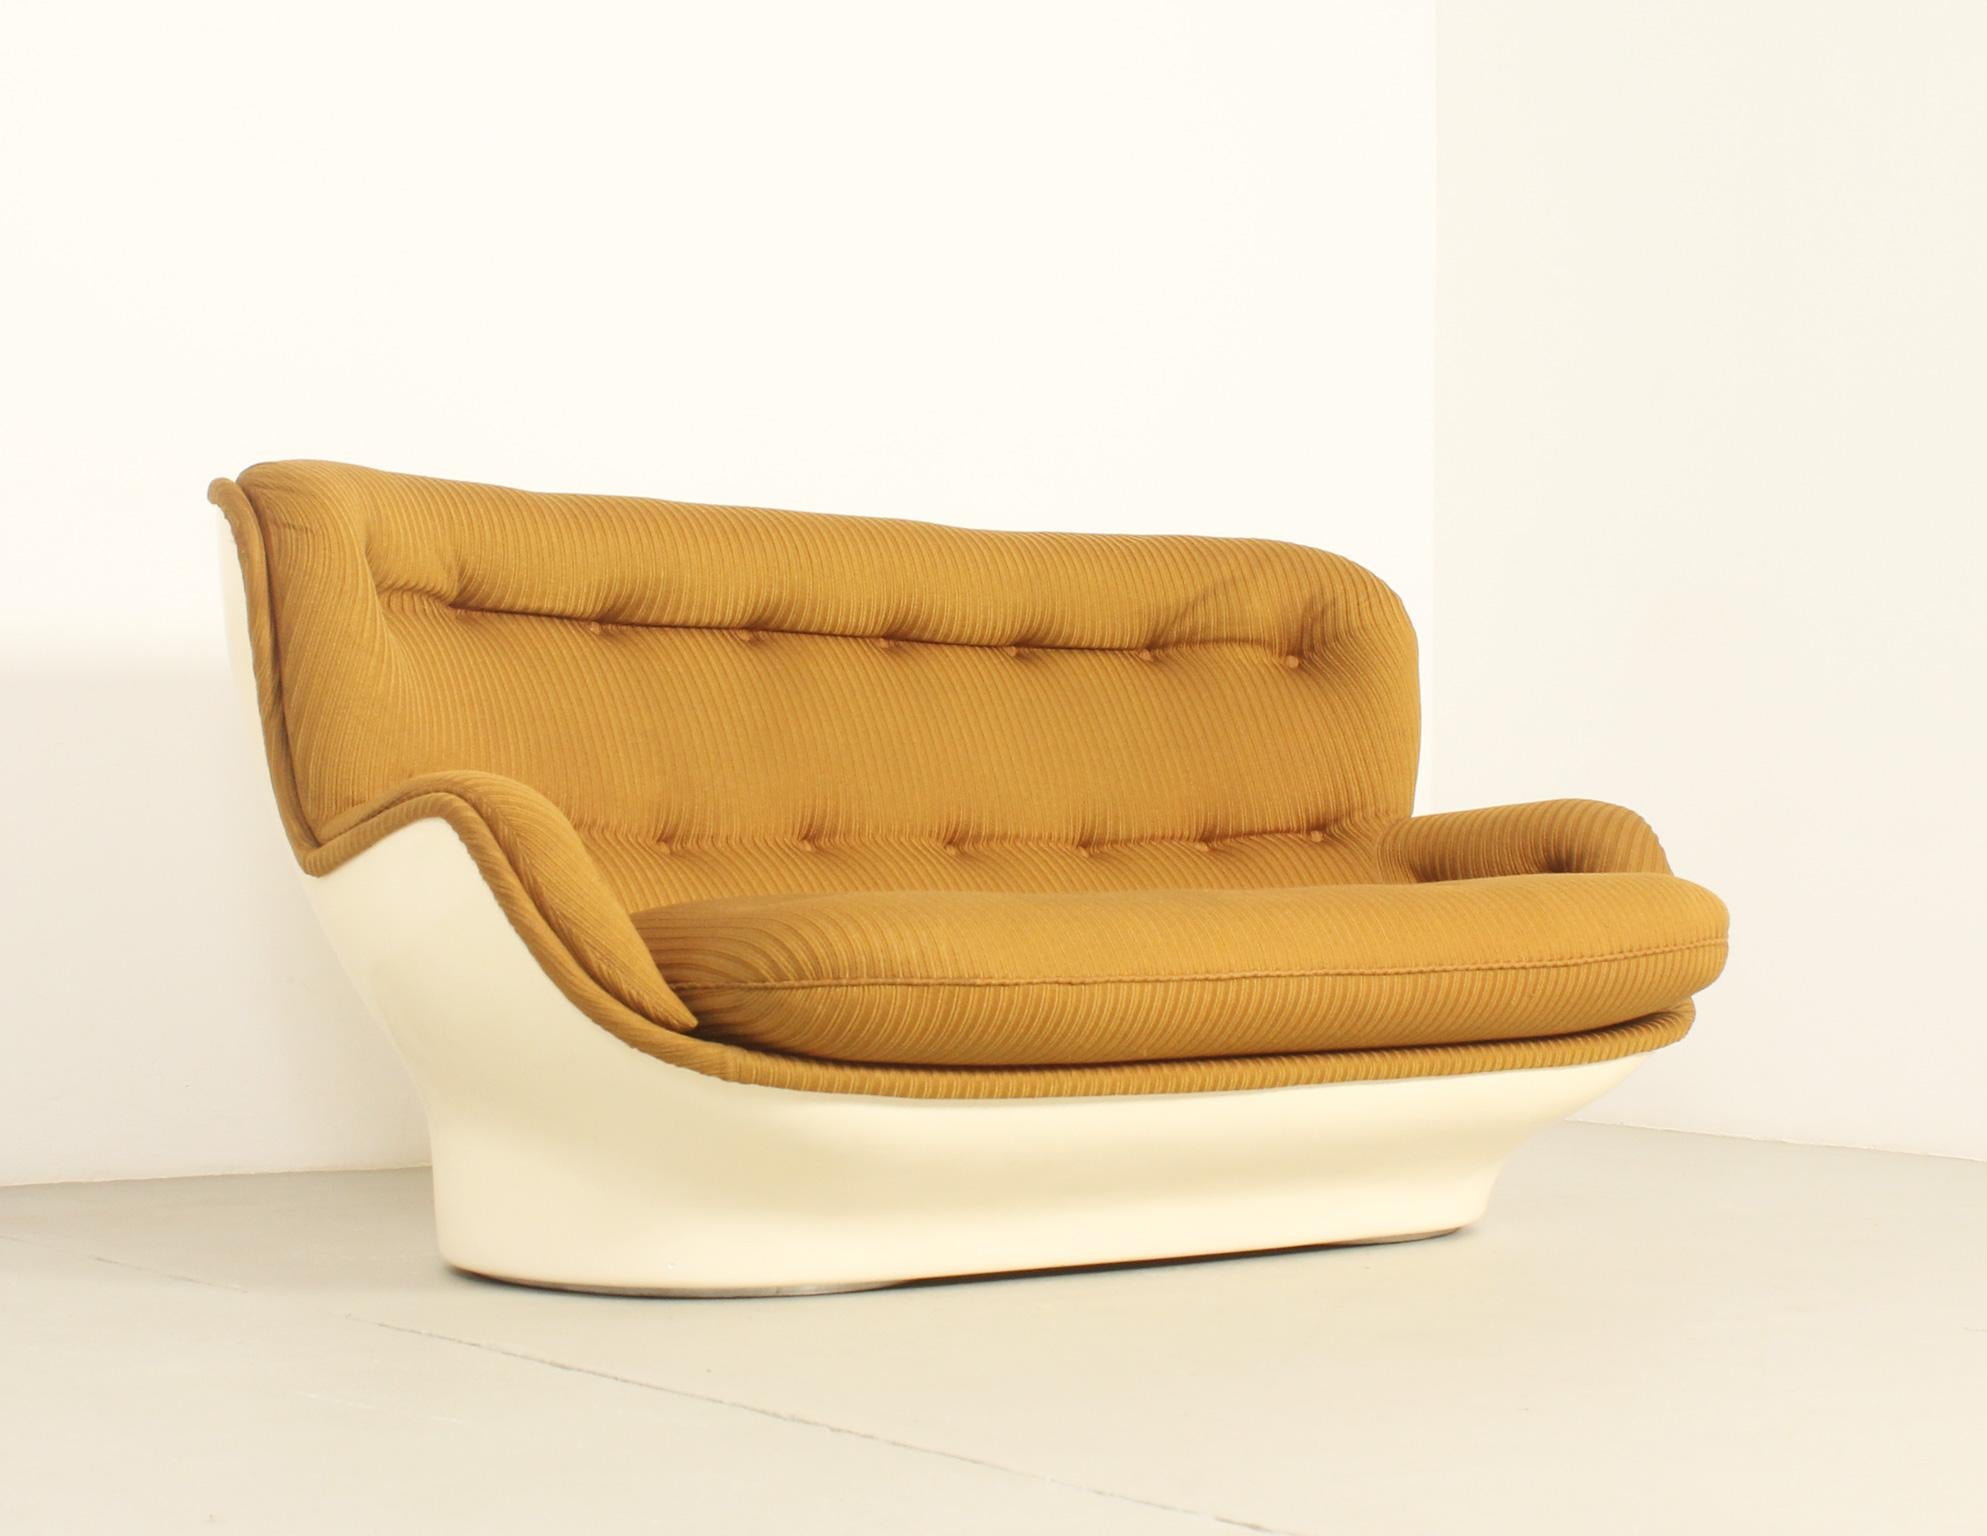 Karate-Sofa, entworfen in den 1970er Jahren von Michel Cadestin für Airborne, Frankreich. Schale aus geformtem Fiberglas, gepolstert mit Originalstoff und losem Sitzkissen. 